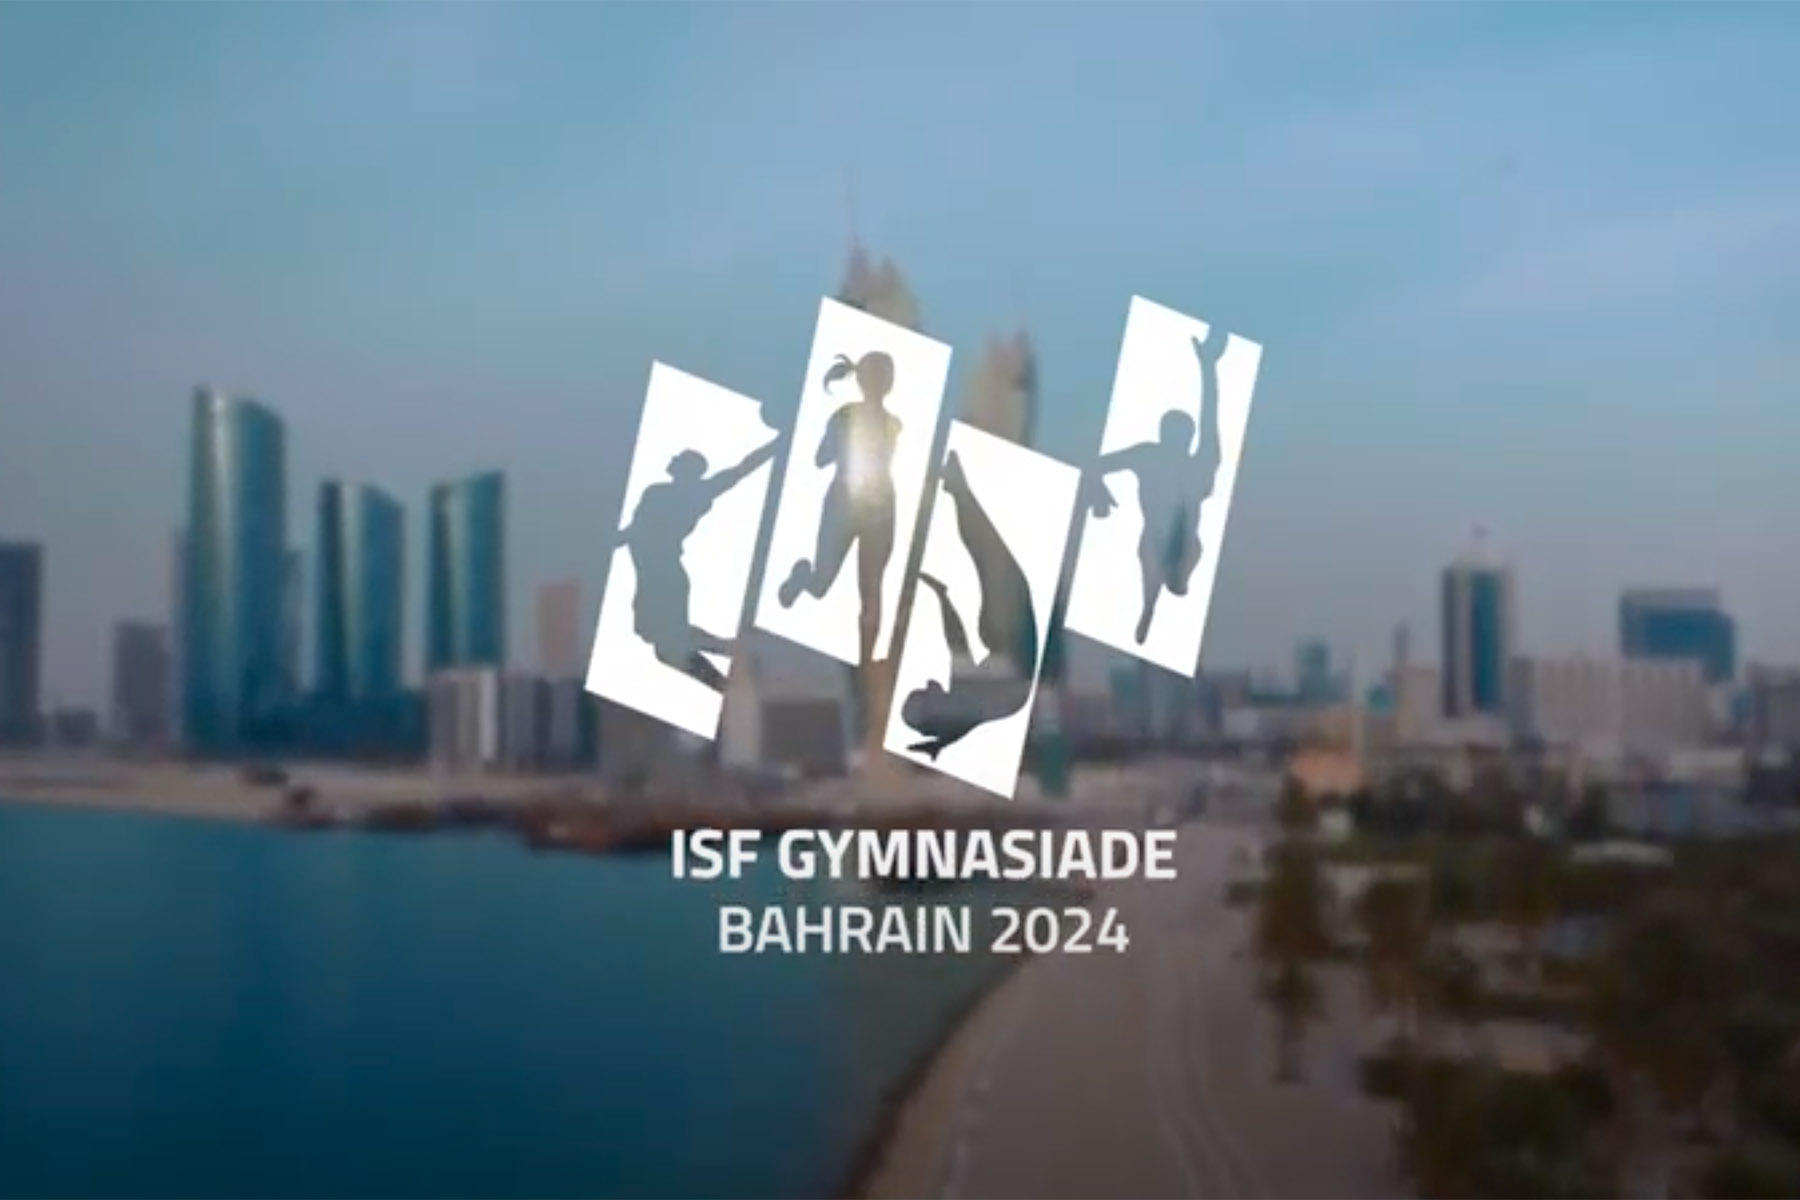 ISF Gymnasiade Bahrain 2024